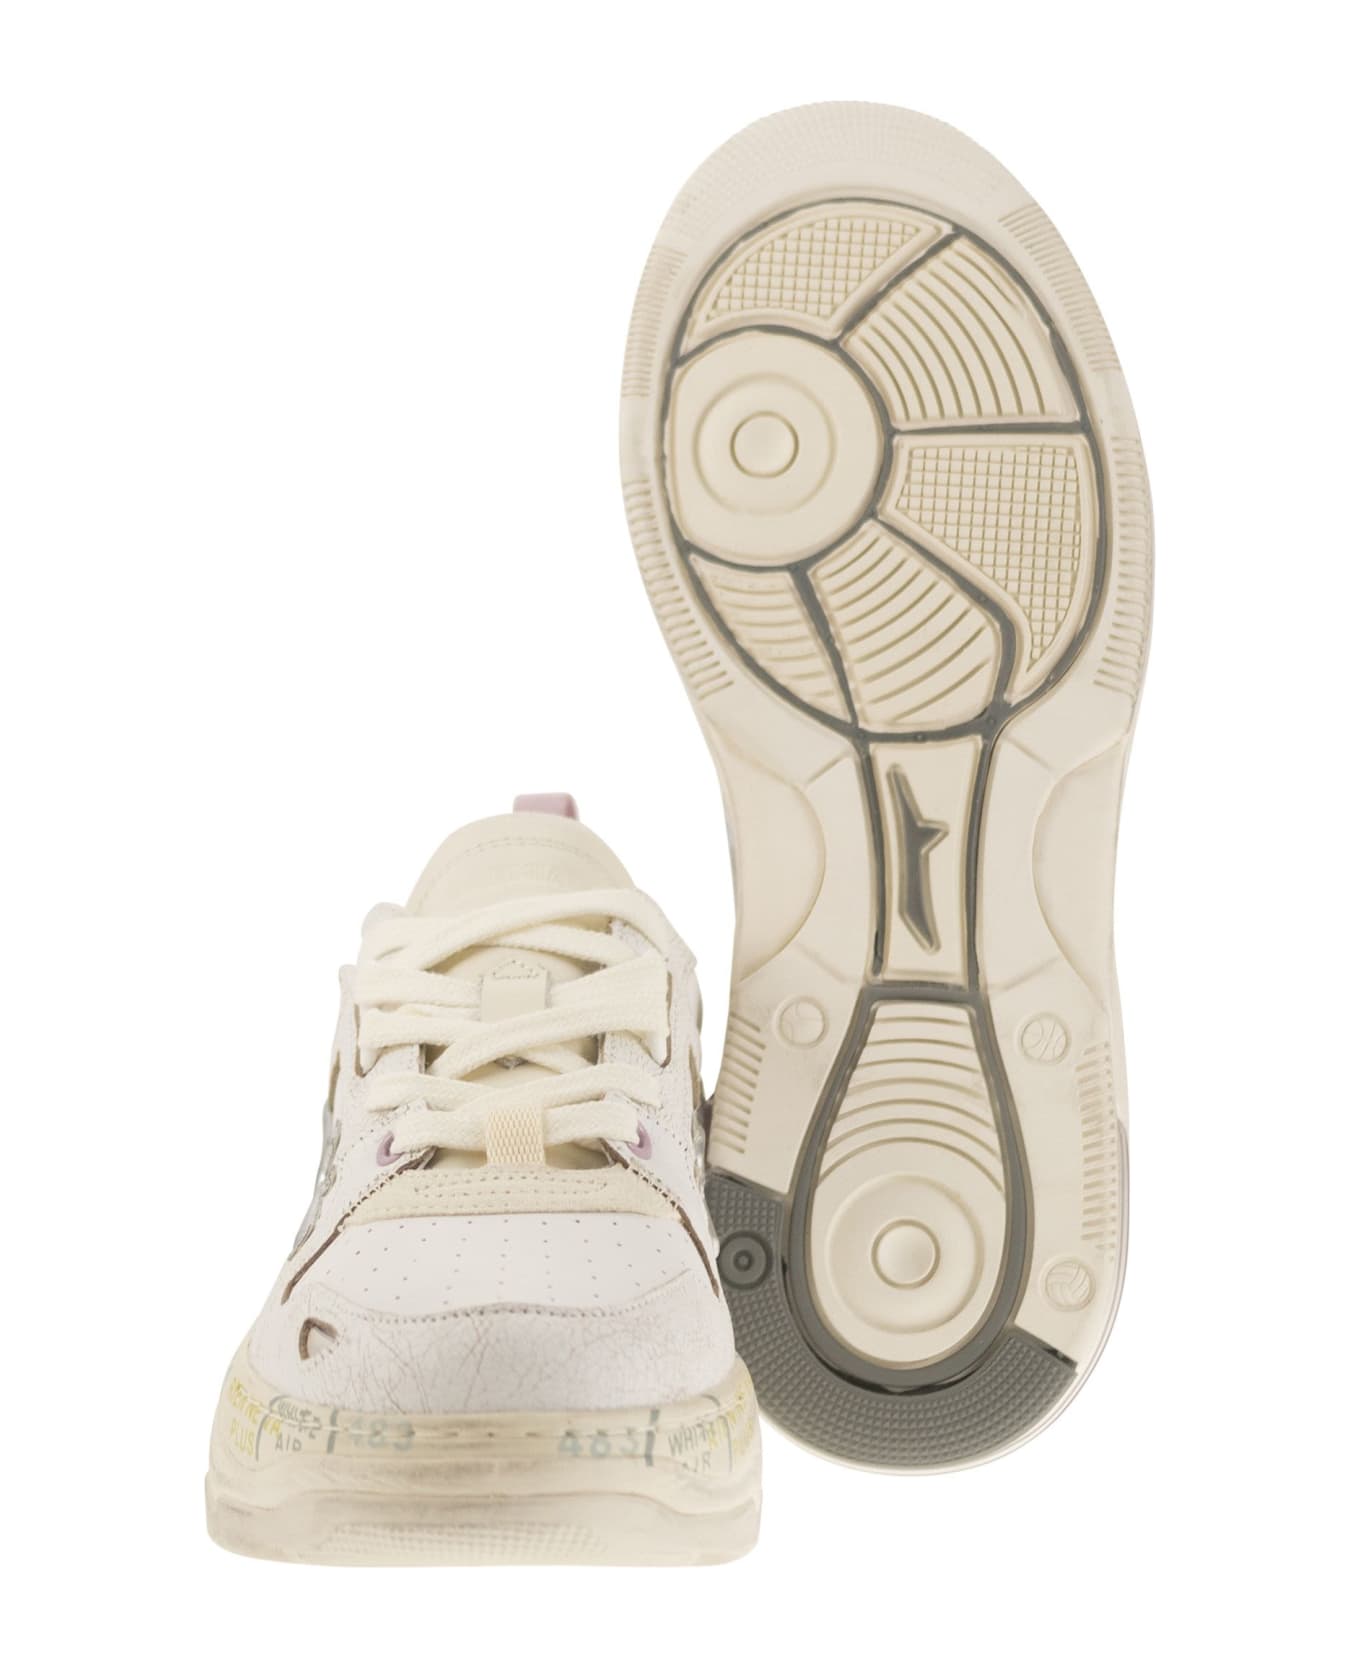 Premiata 'draked' White Leather Sneakers - White